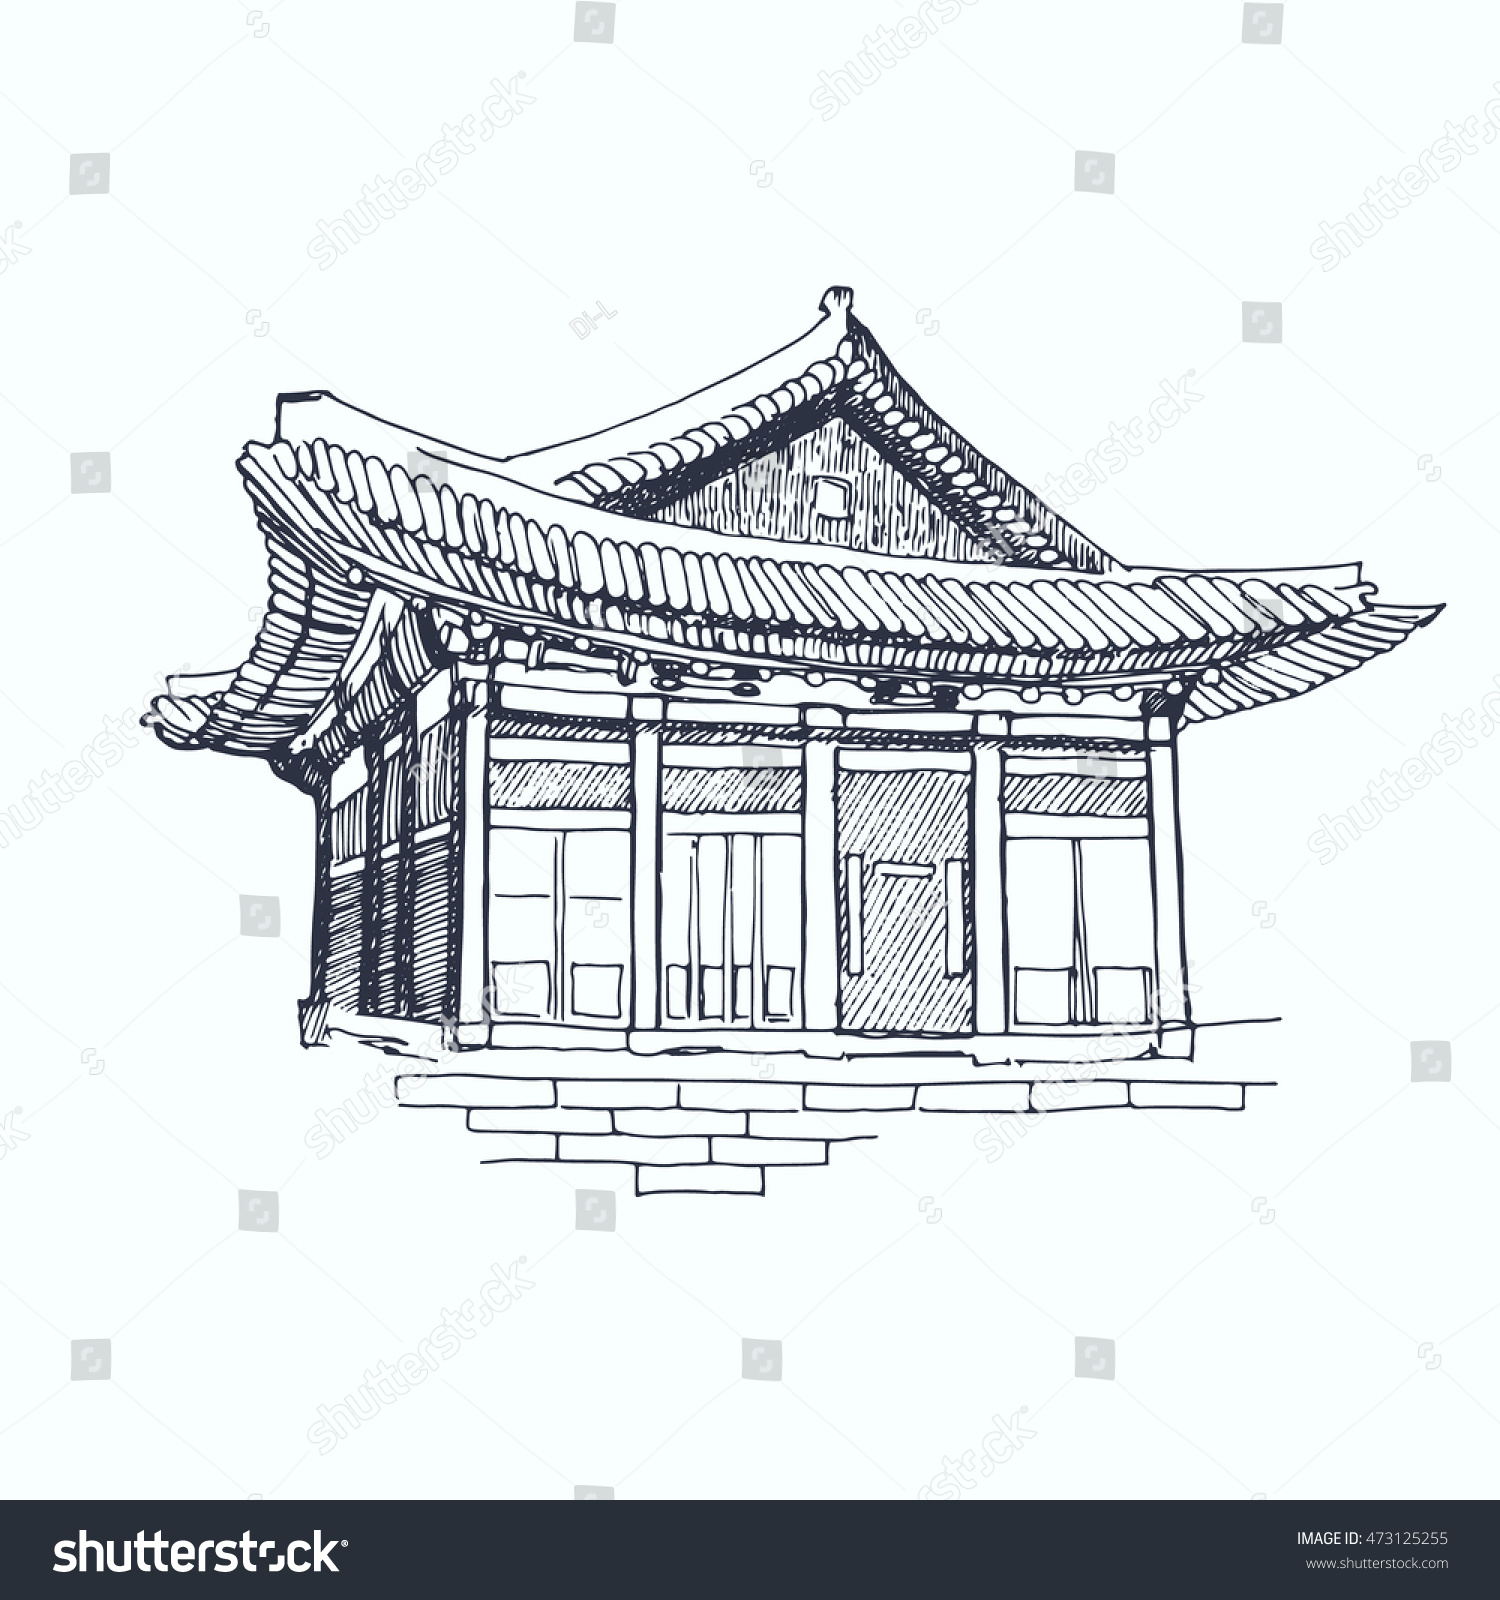 Корейская архитектура рисунок Ханок